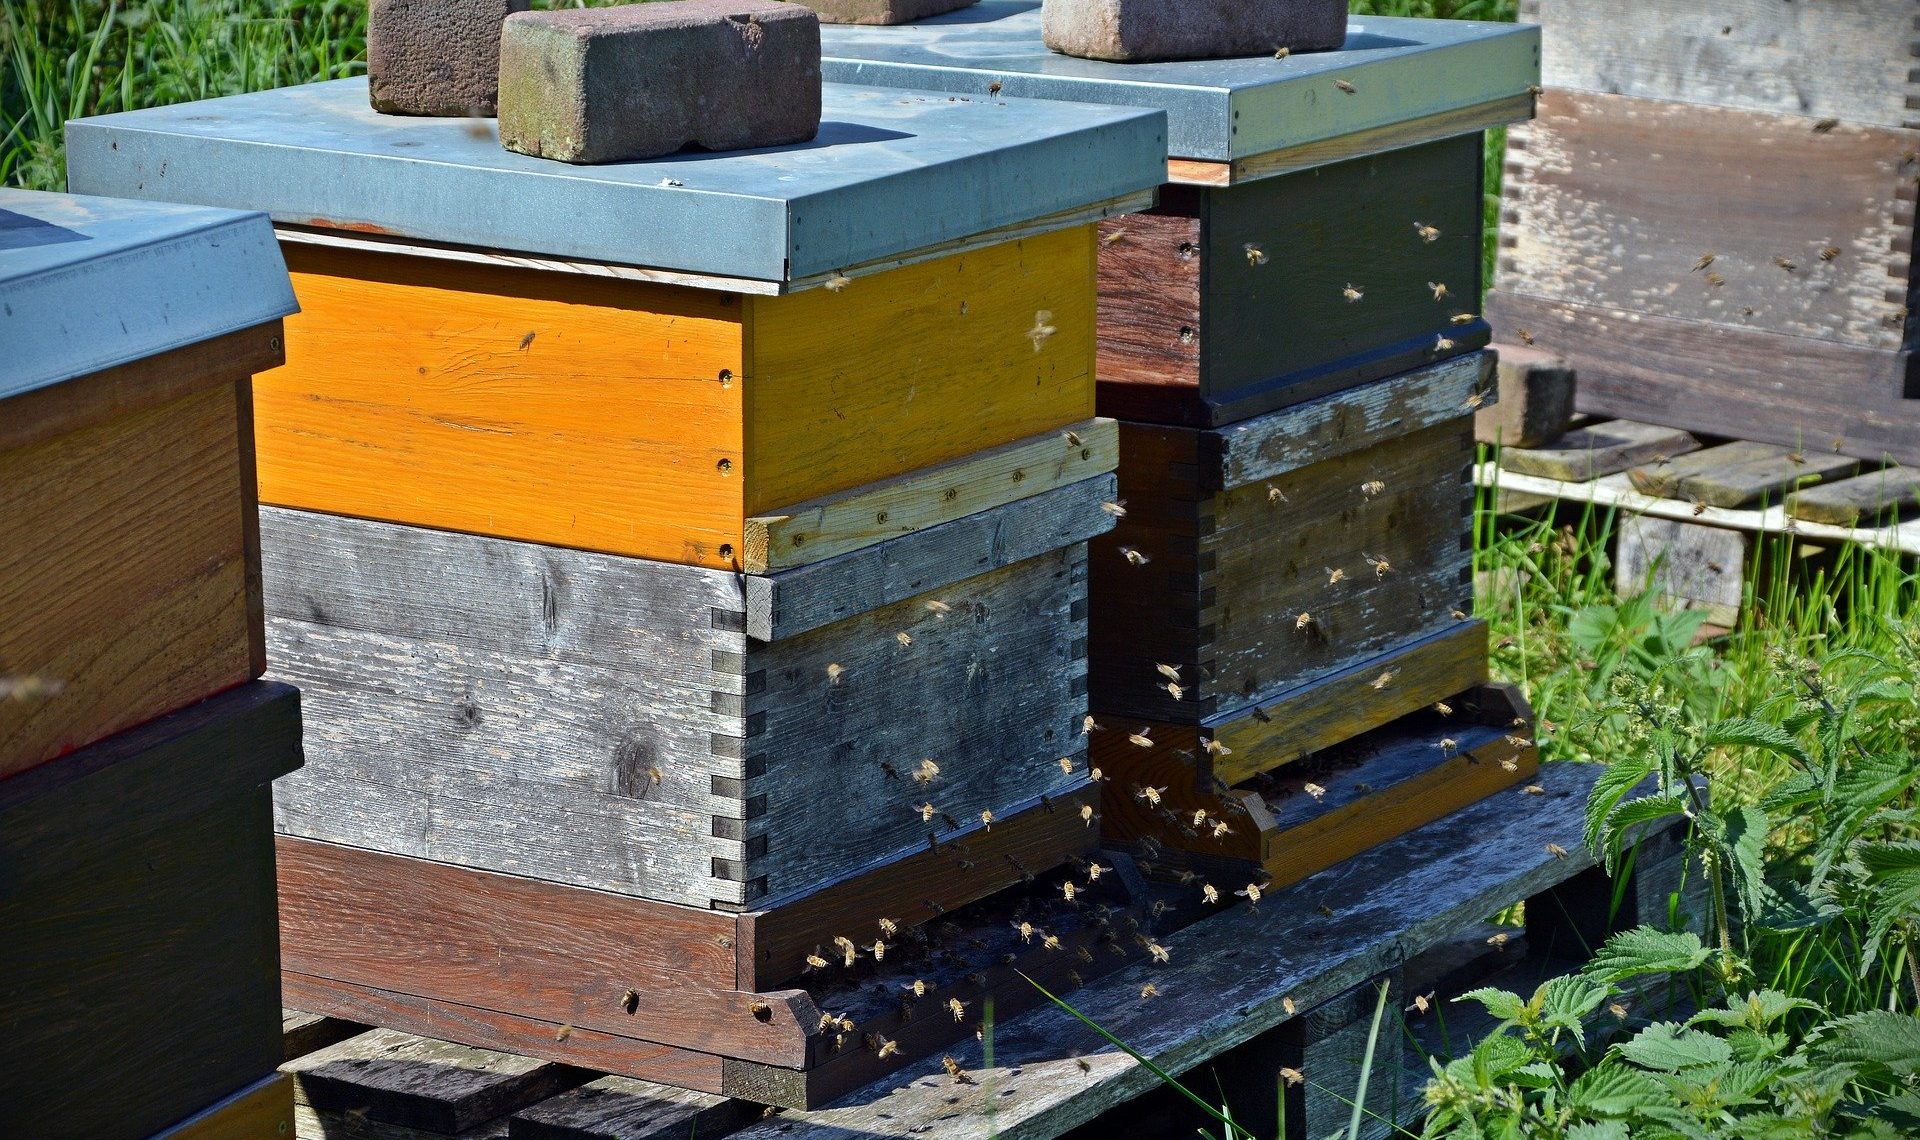 Apiculture : Covid-19 : Impact des mesures sur l’activité apicole.